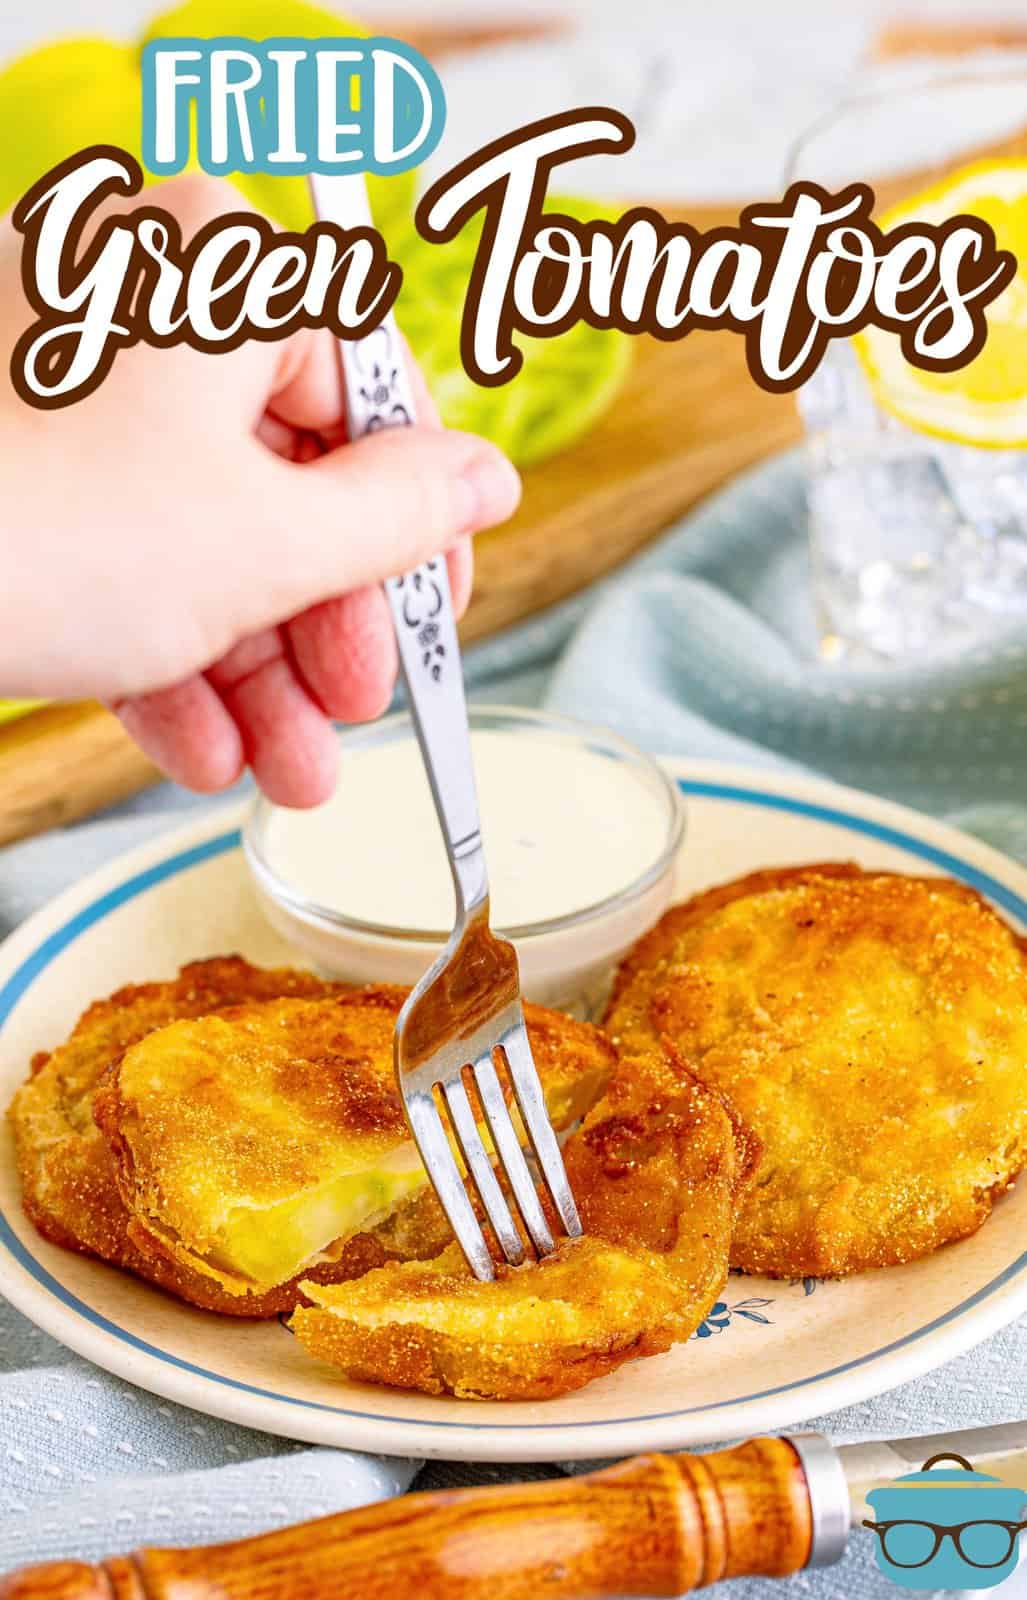 Immagine Pinterest della forchetta che infila uno dei pomodori verdi fritti sul piatto.